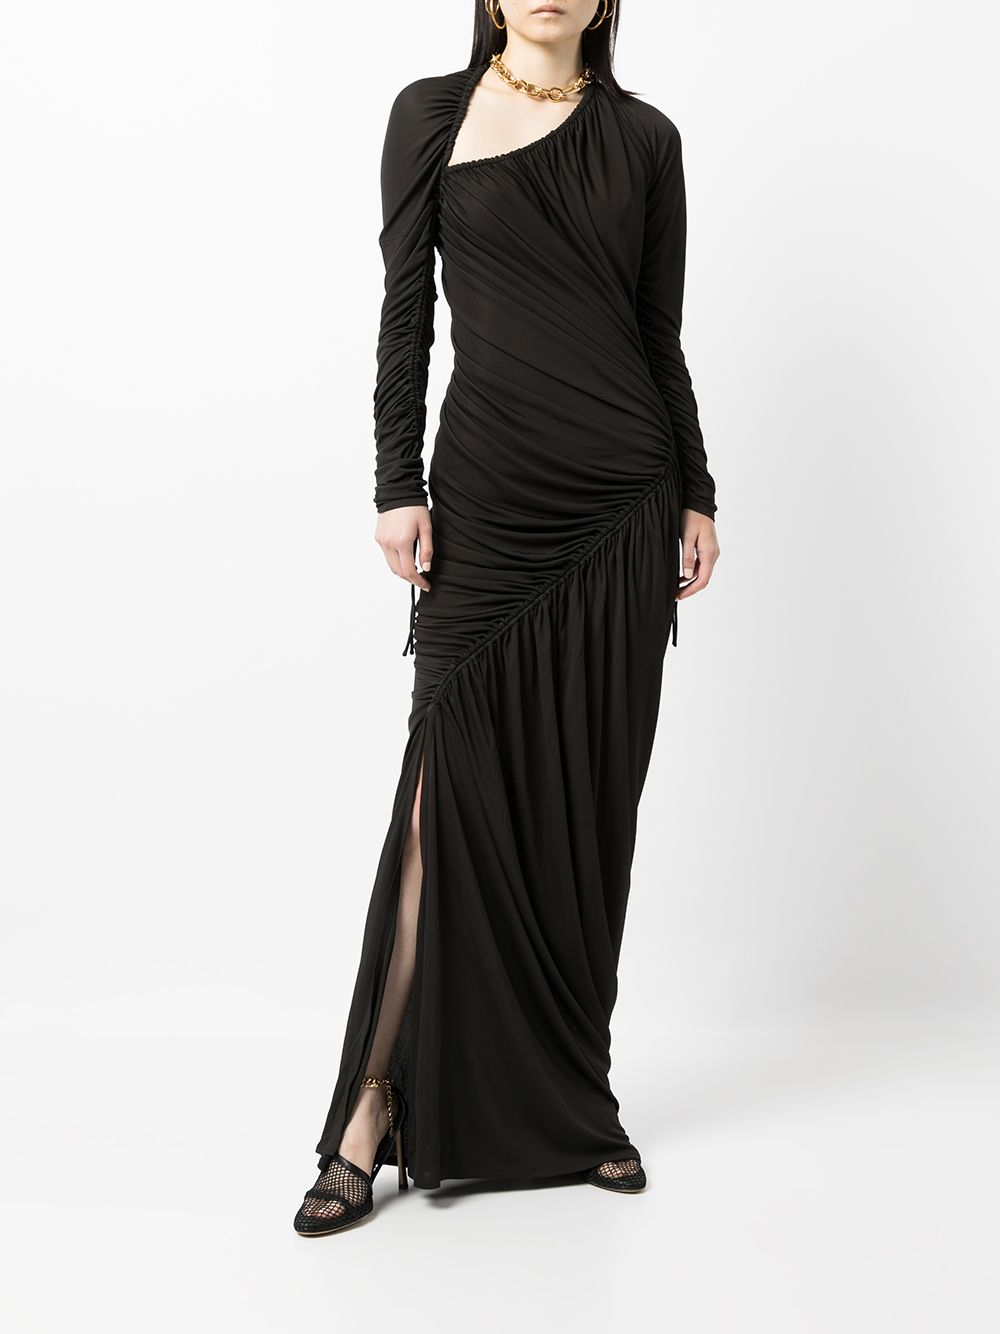 фото Bottega veneta длинное платье асимметричного кроя со сборками